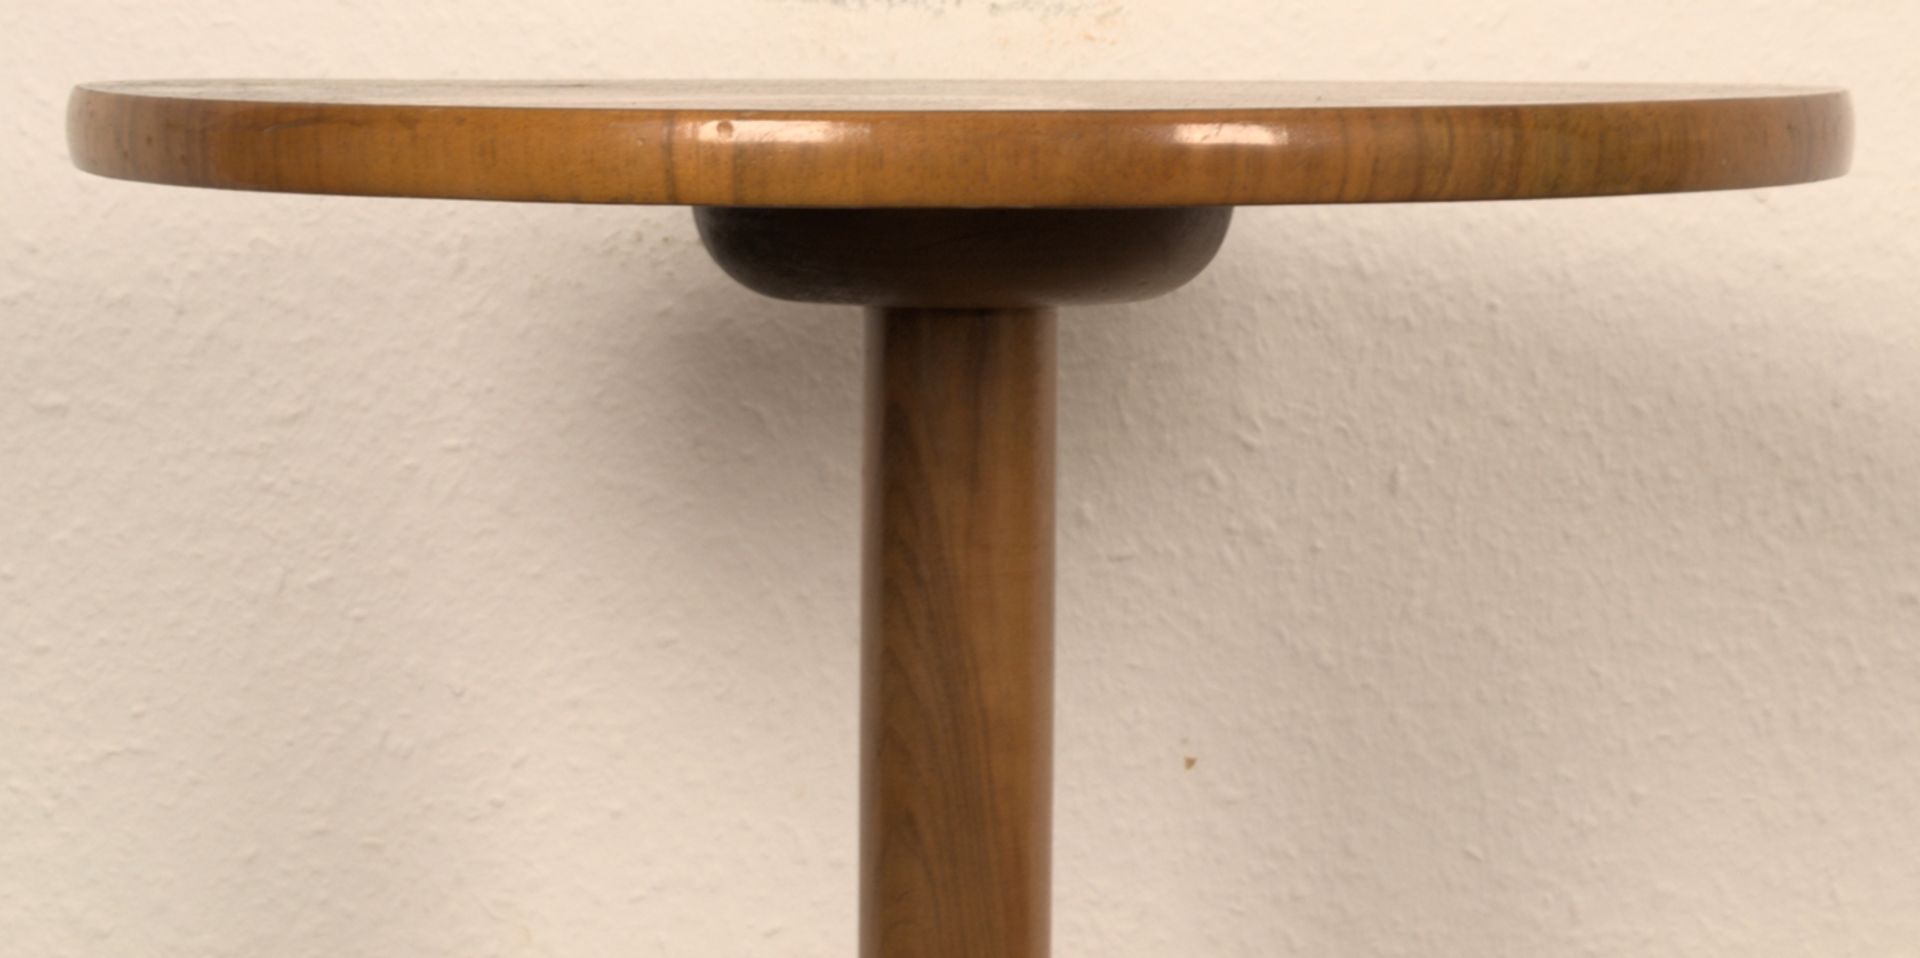 Rundes Lampentischchen, Biedermeier-Stil 19./20. Jhd., Höhe ca. 75 cm, Durchmesser ca. 42 cm. - Image 4 of 5